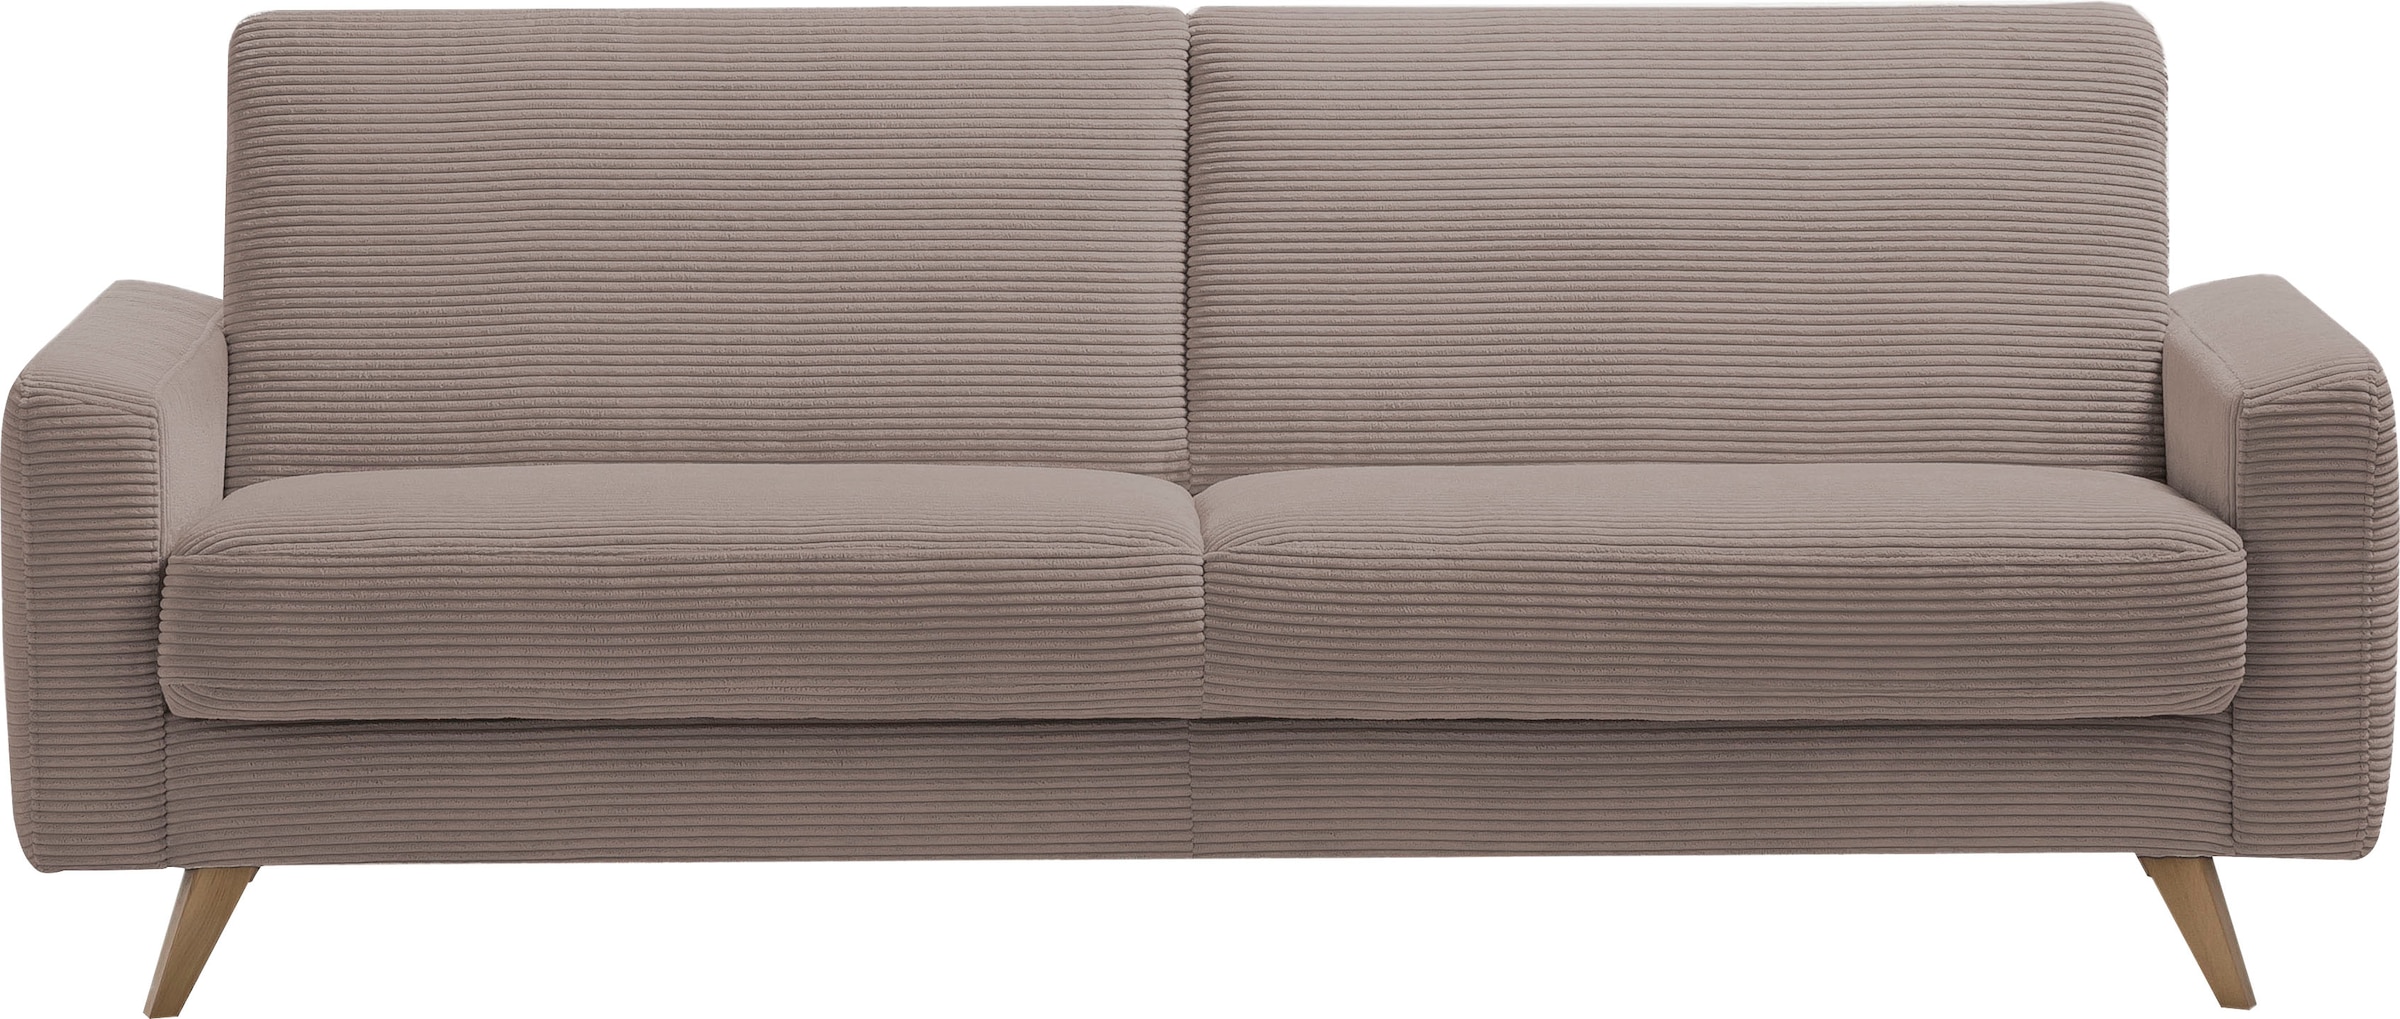 sofa Inklusive 3-Sitzer Bettfunktion bequem kaufen »Samso«, exxpo - Bettkasten und fashion